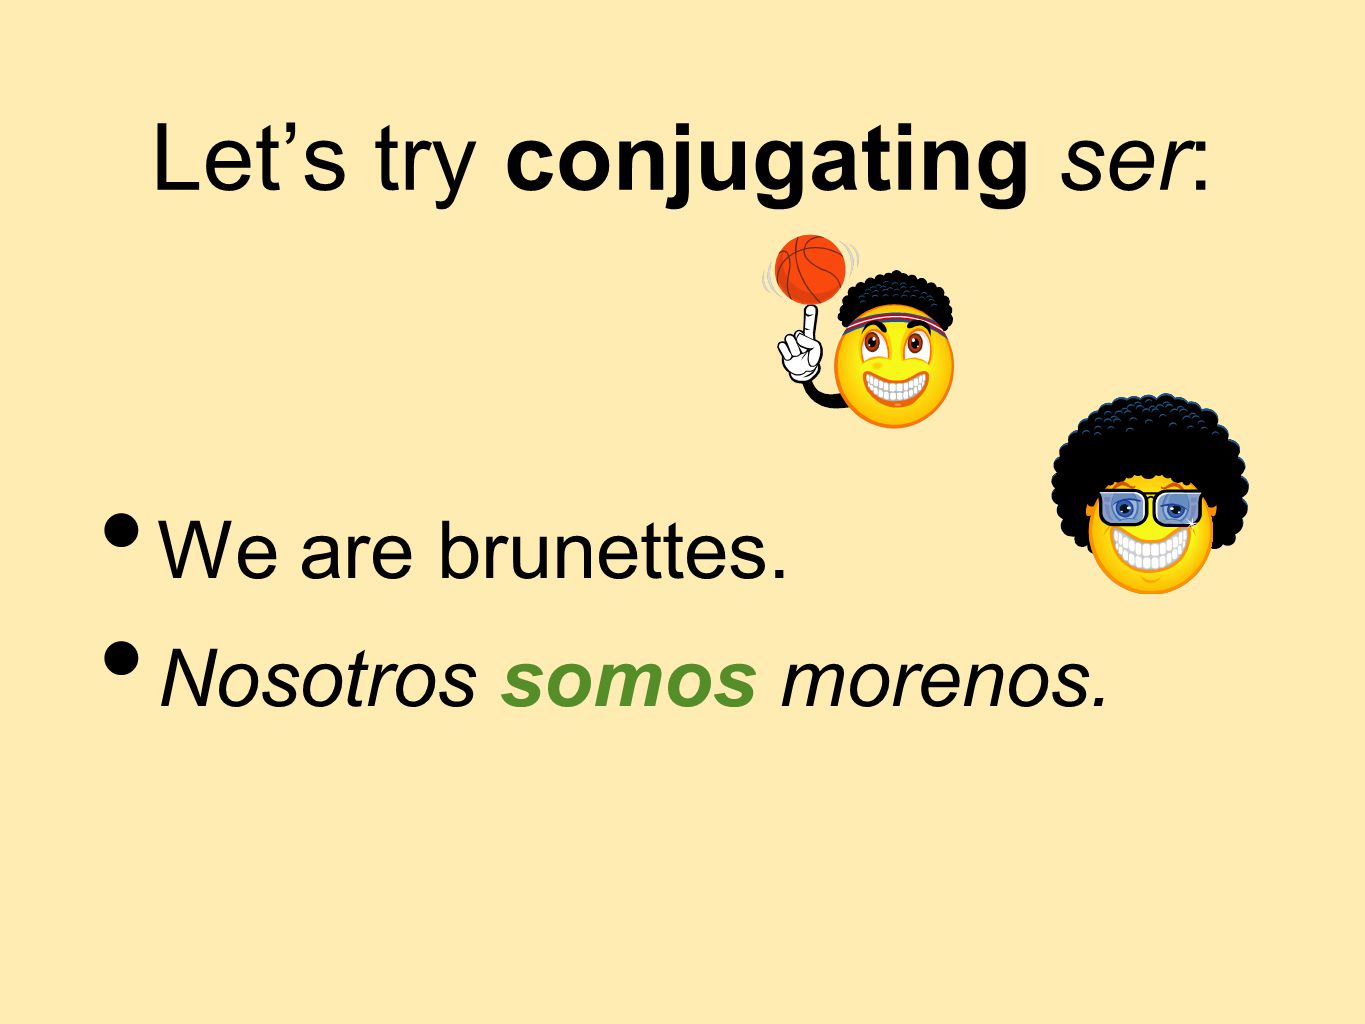 Let’s try conjugating ser: We are brunettes. Nosotros somos morenos.